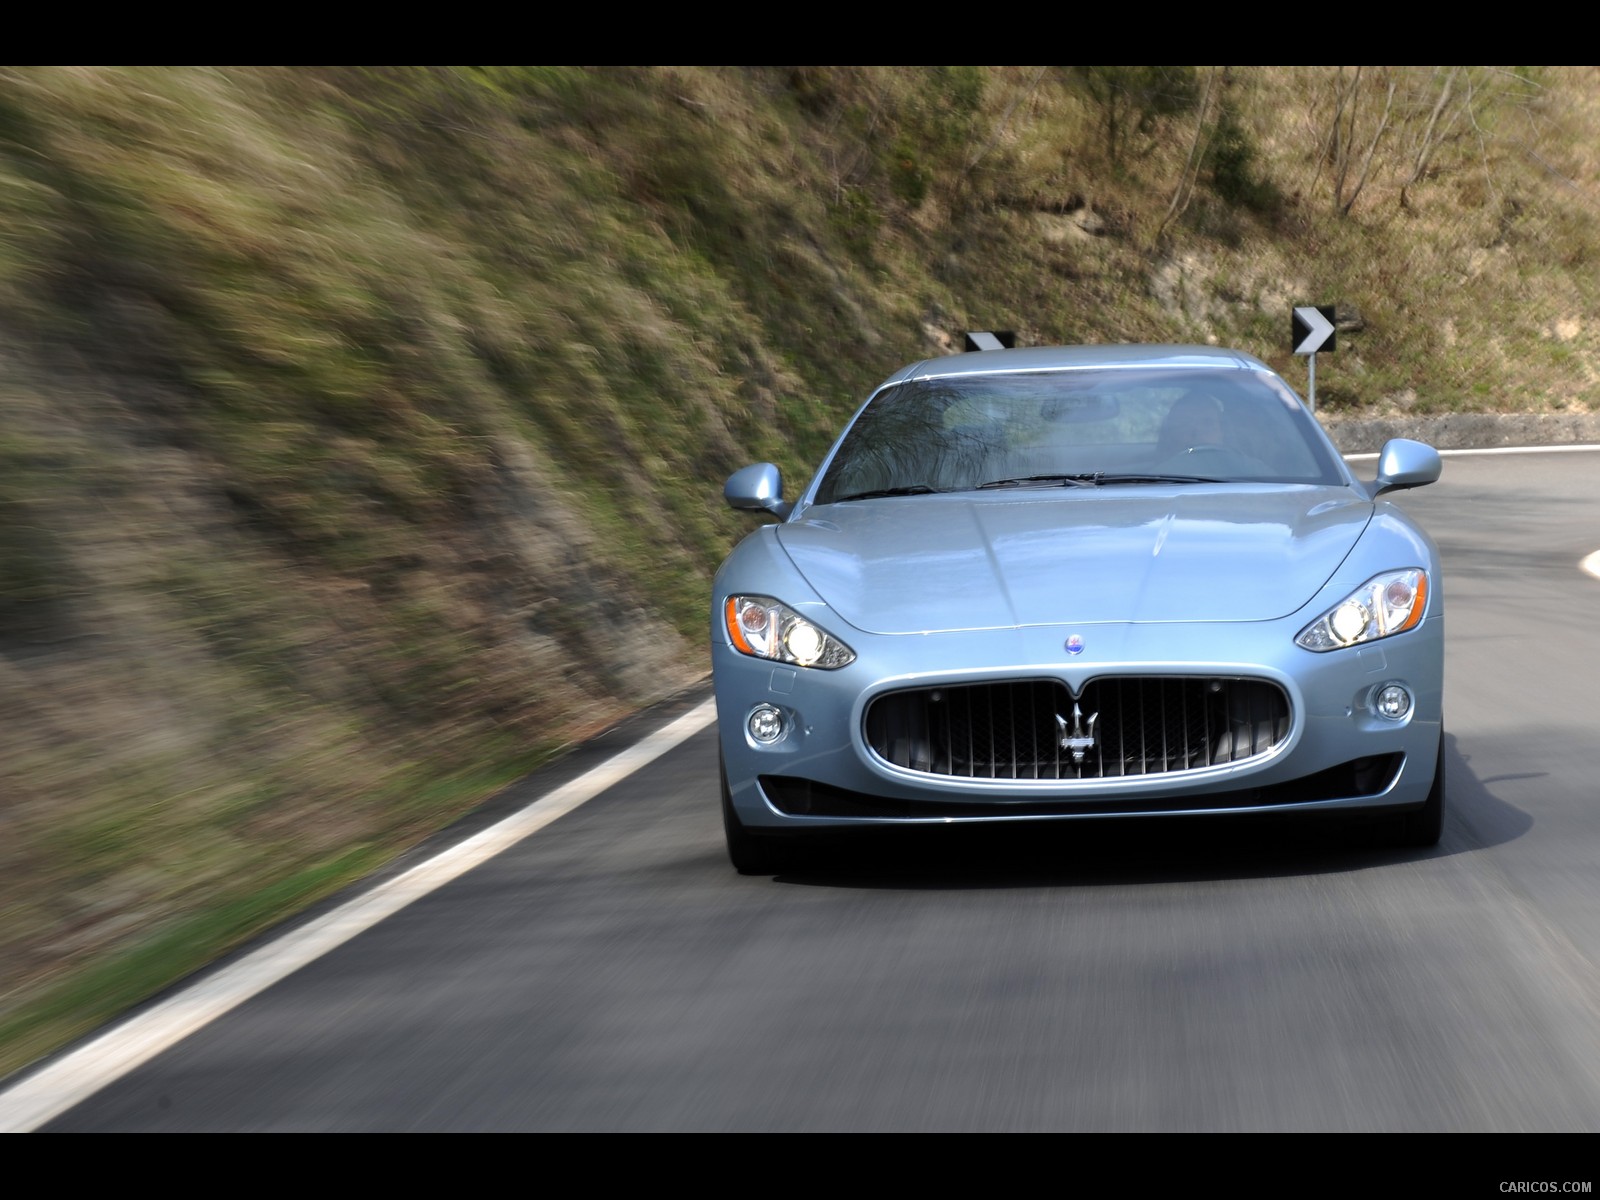 Maserati GranTurismo S Automatic (2010)  - Front Angle , #36 of 58